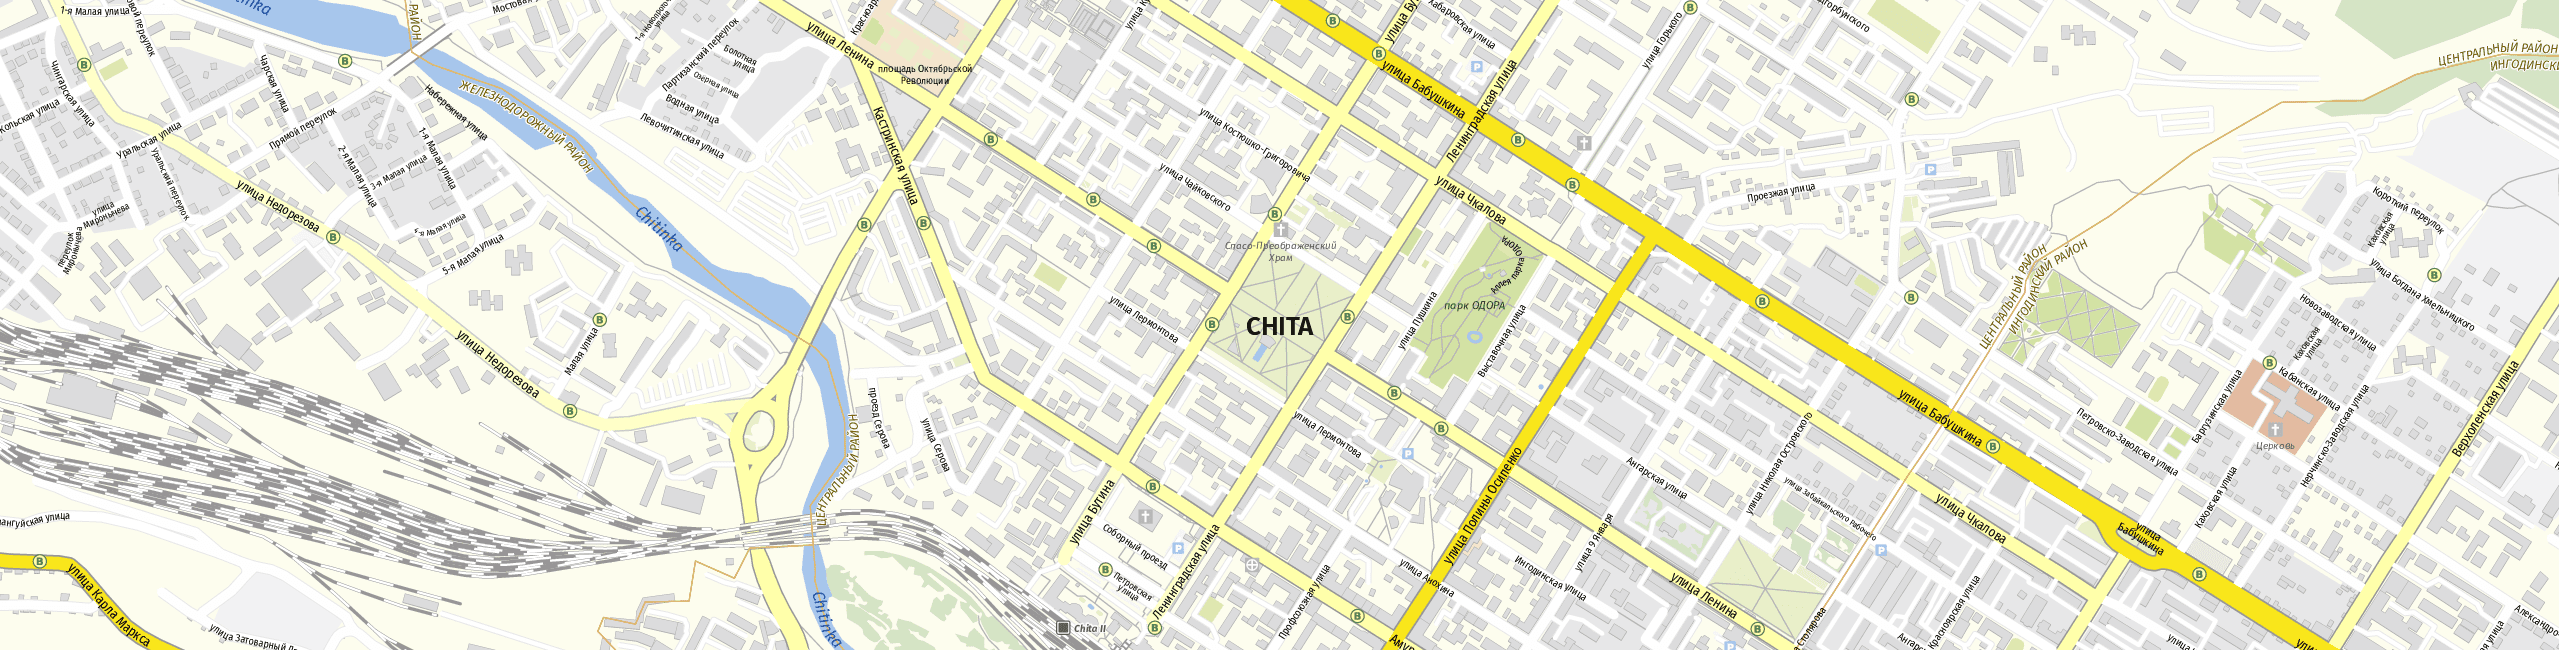 Stadtplan Tschita zum Downloaden.